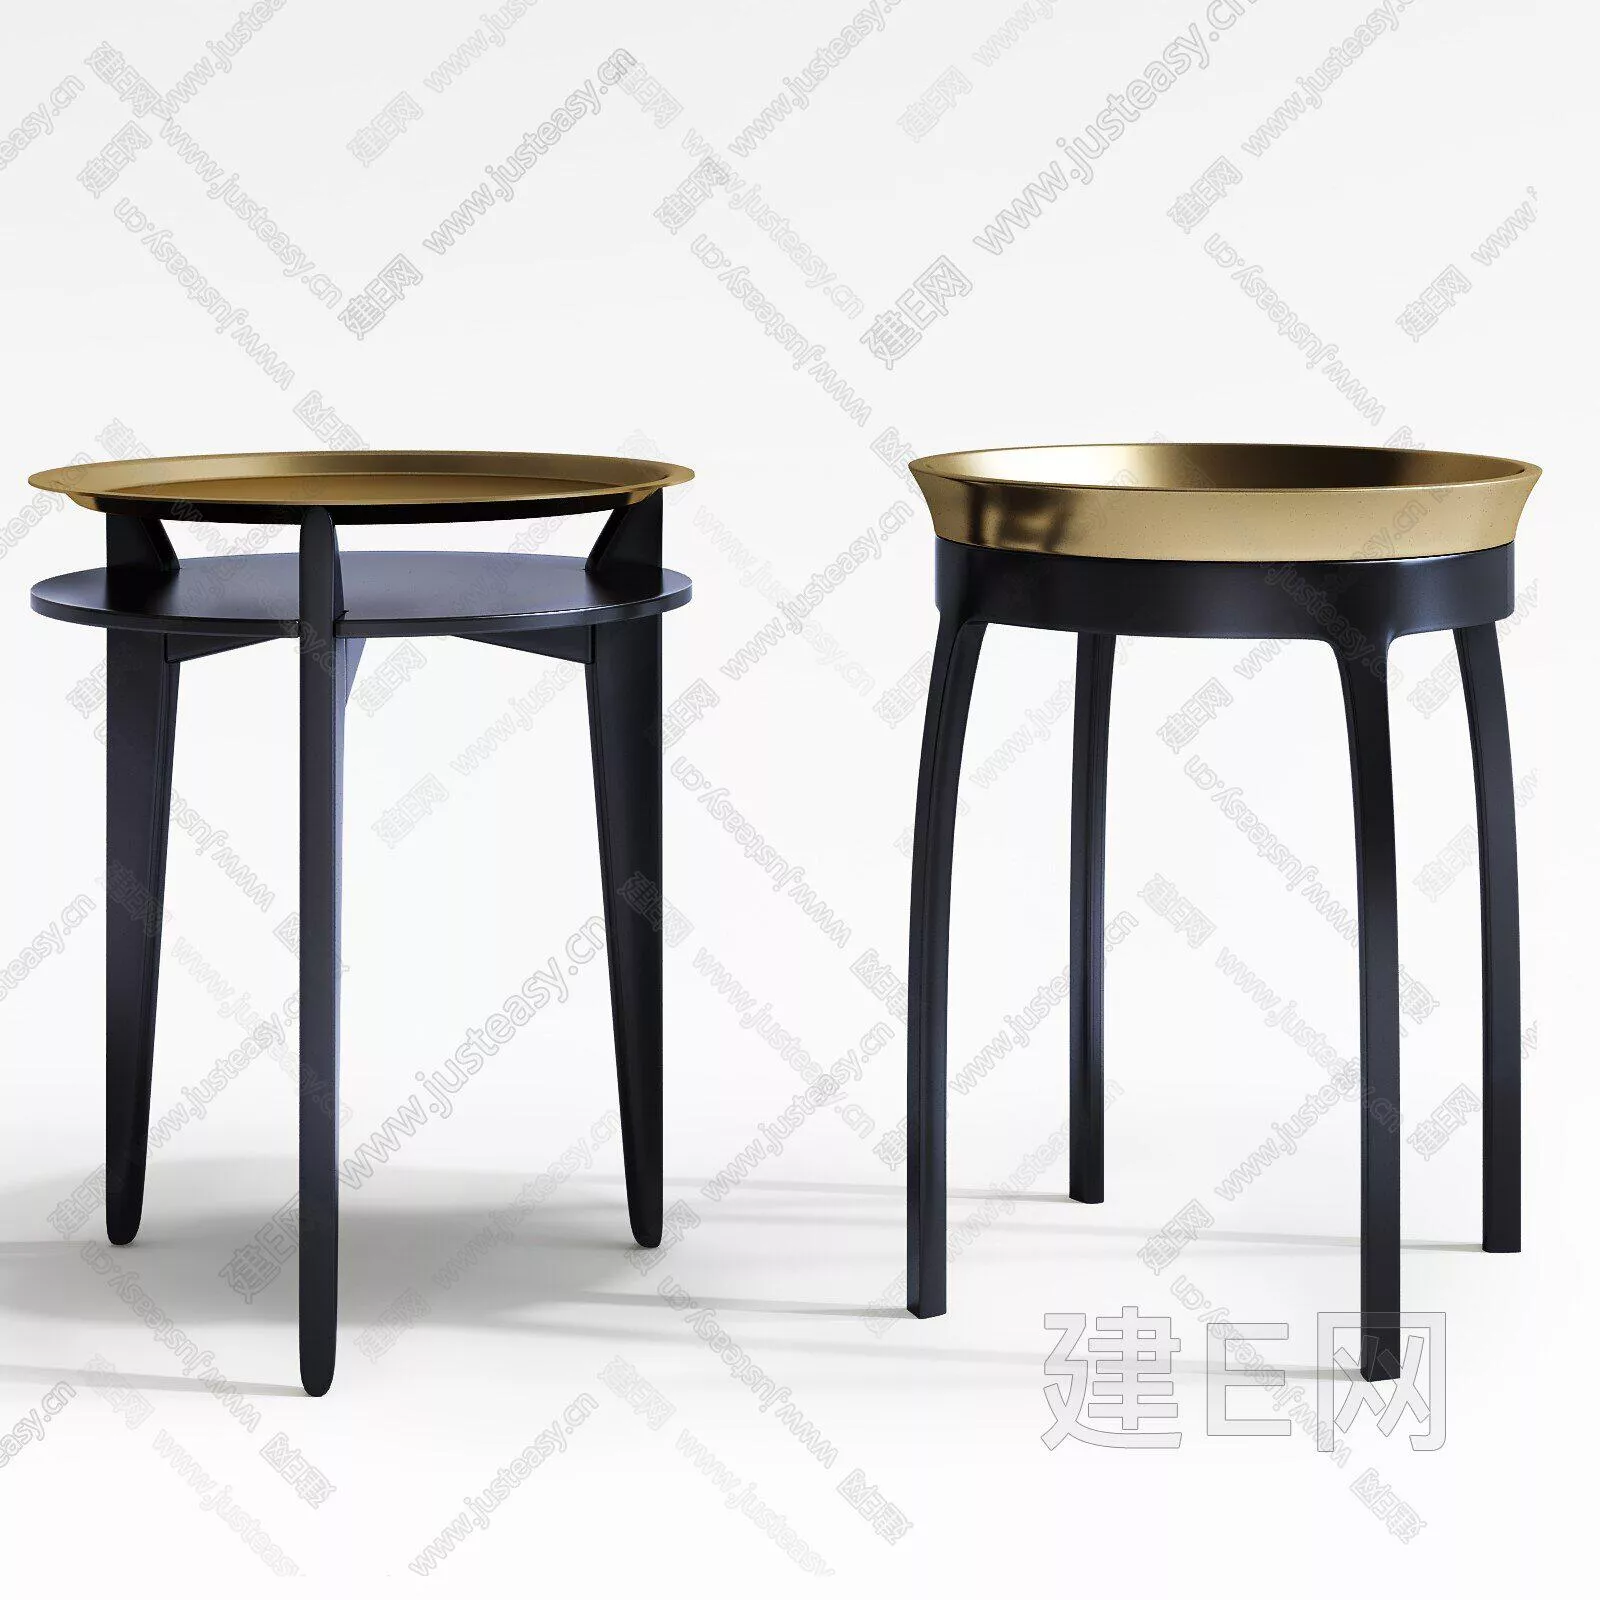 MODERN SIDE TABLE - SKETCHUP 3D MODEL - ENSCAPE - 112086372